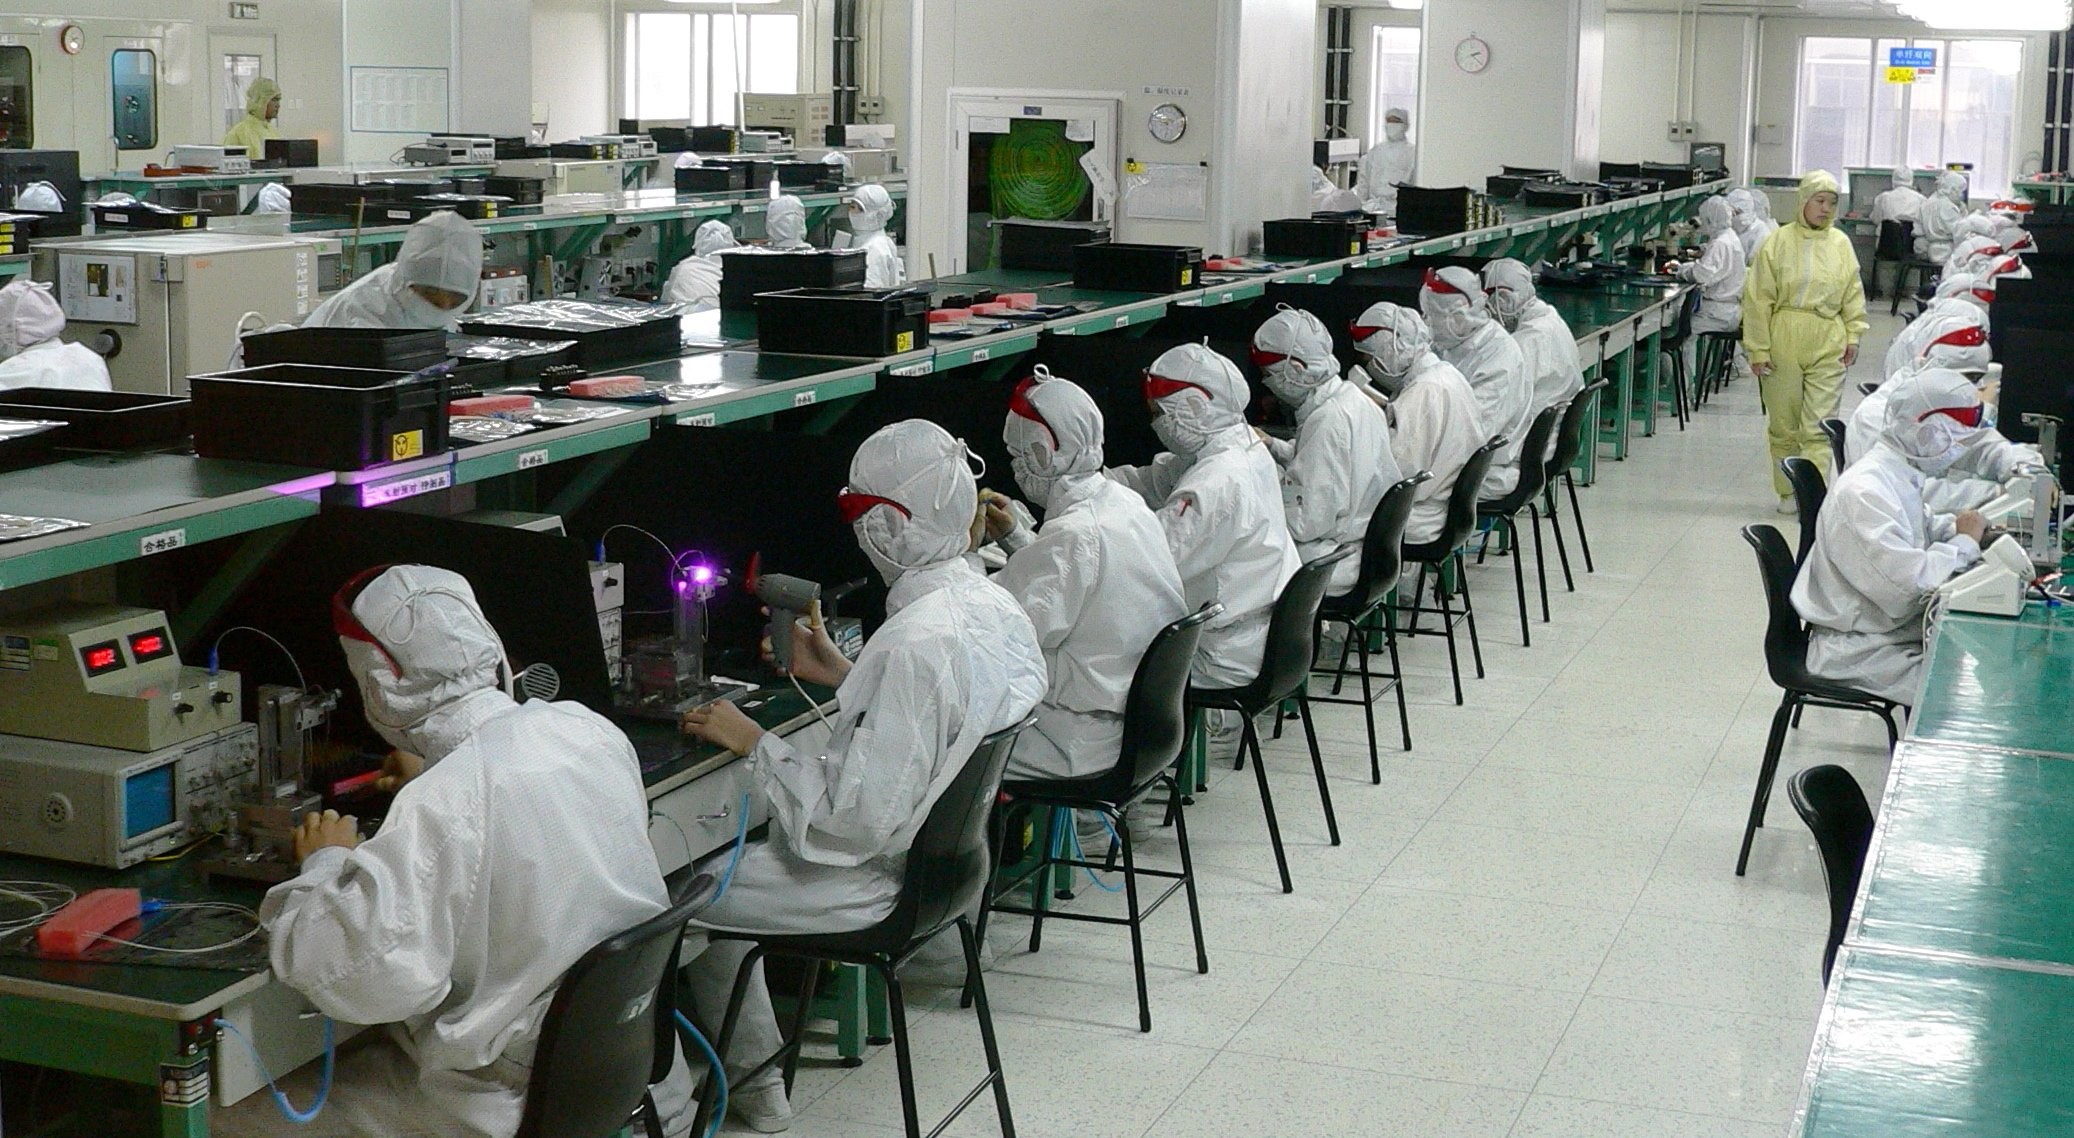 
Quanta Computer đang mở rộng việc sản xuất bên ngoài Trung Quốc địa lục
